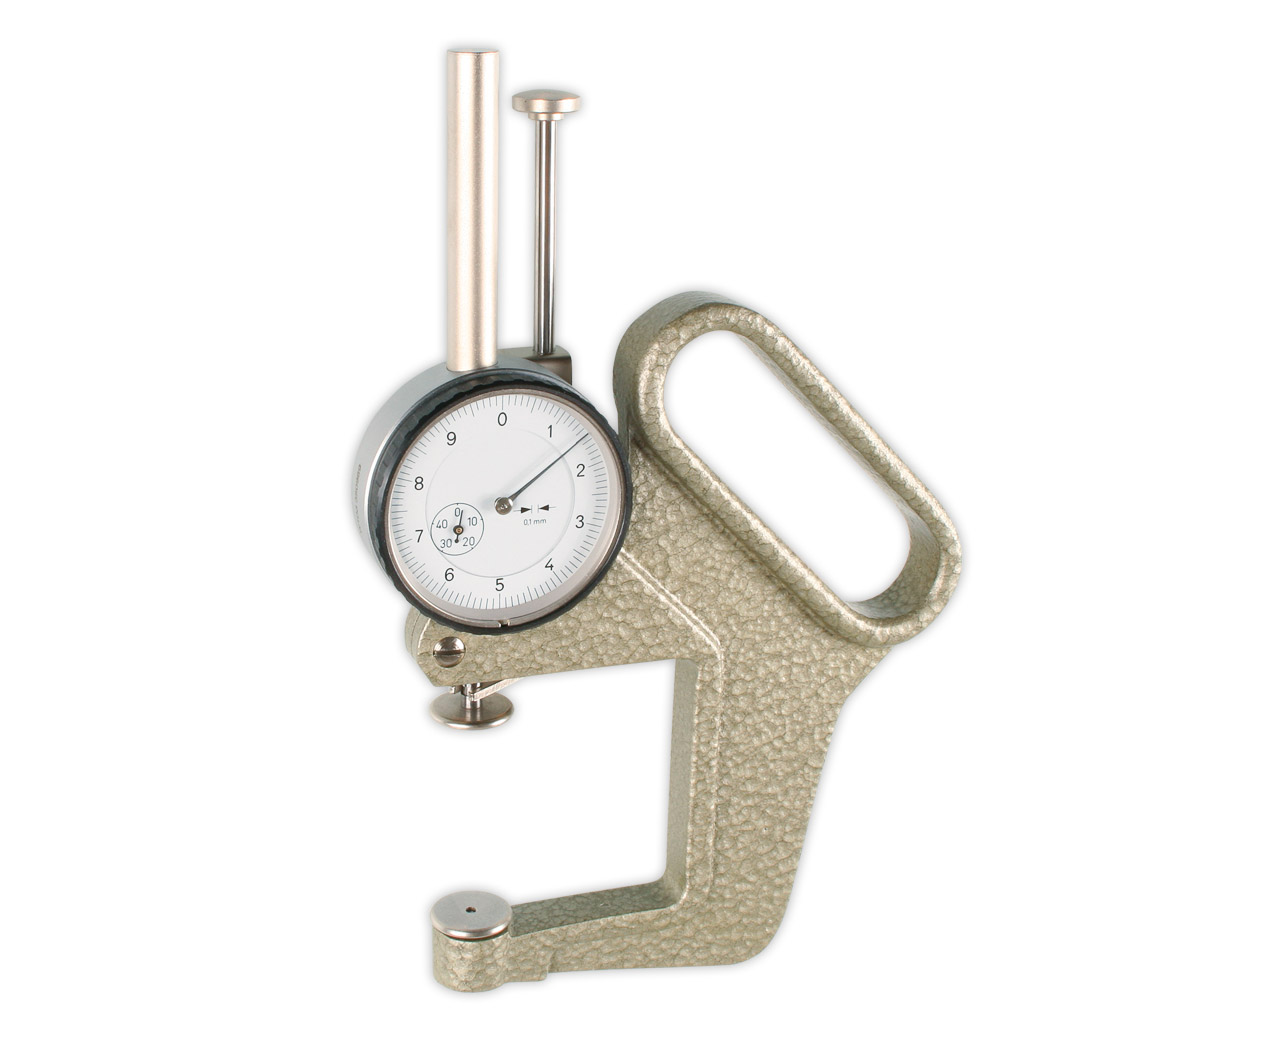 Dicken-Messgerät Dickenmesser Messgerät Meßspanne 0-50 mm 